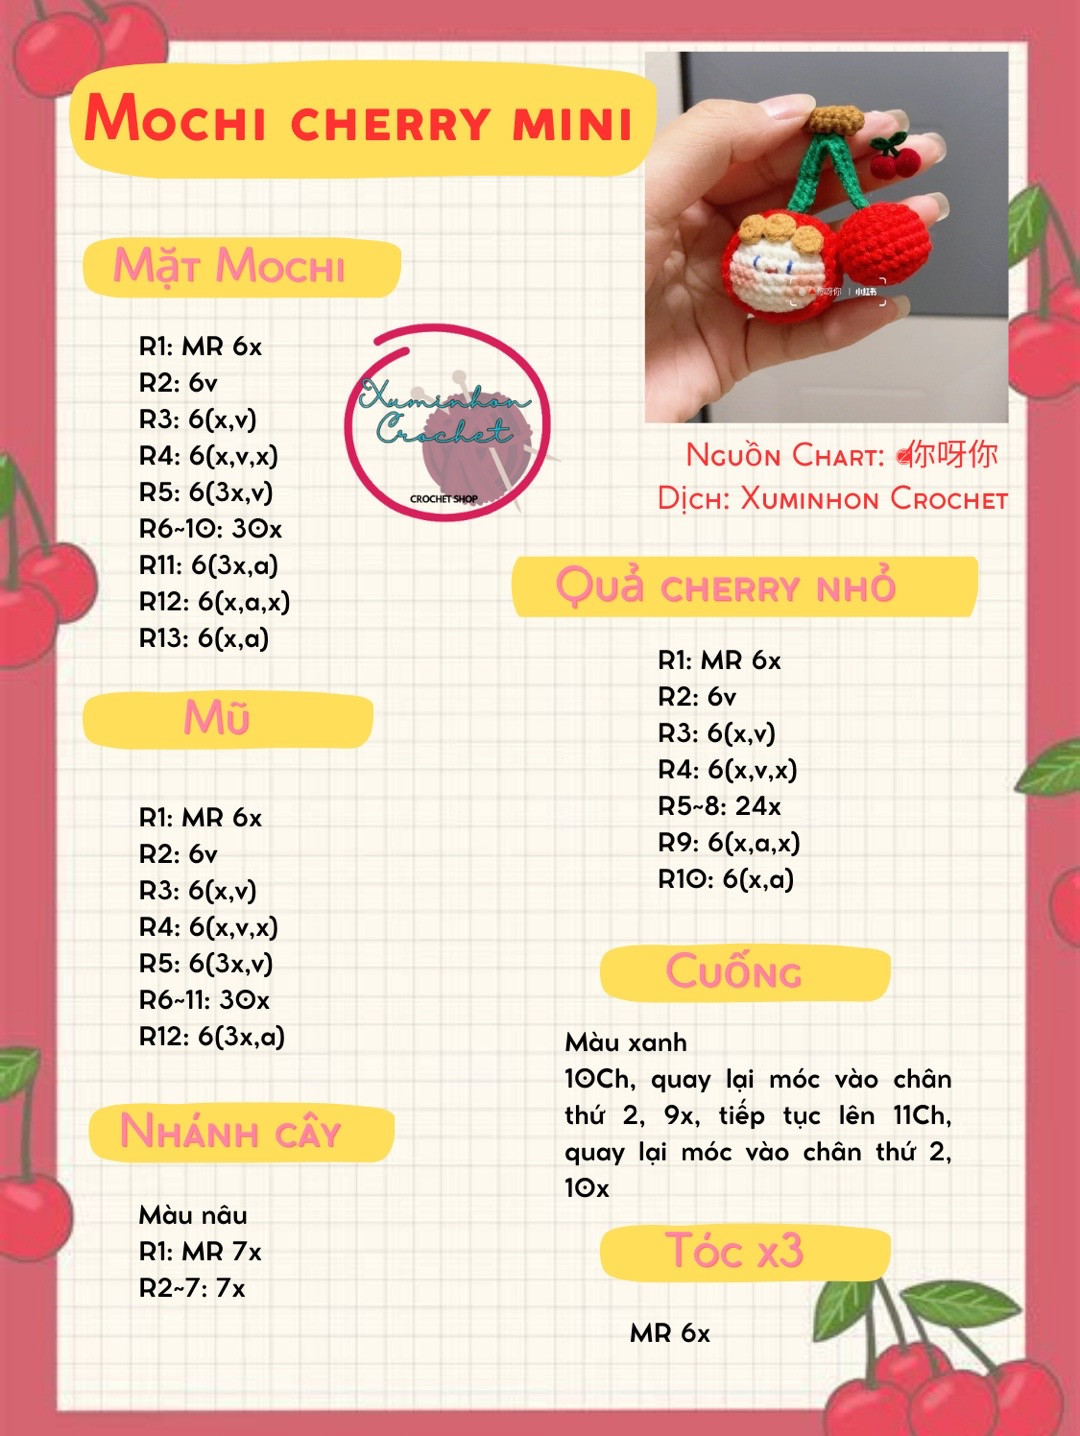 chart móc chochi cherry mini